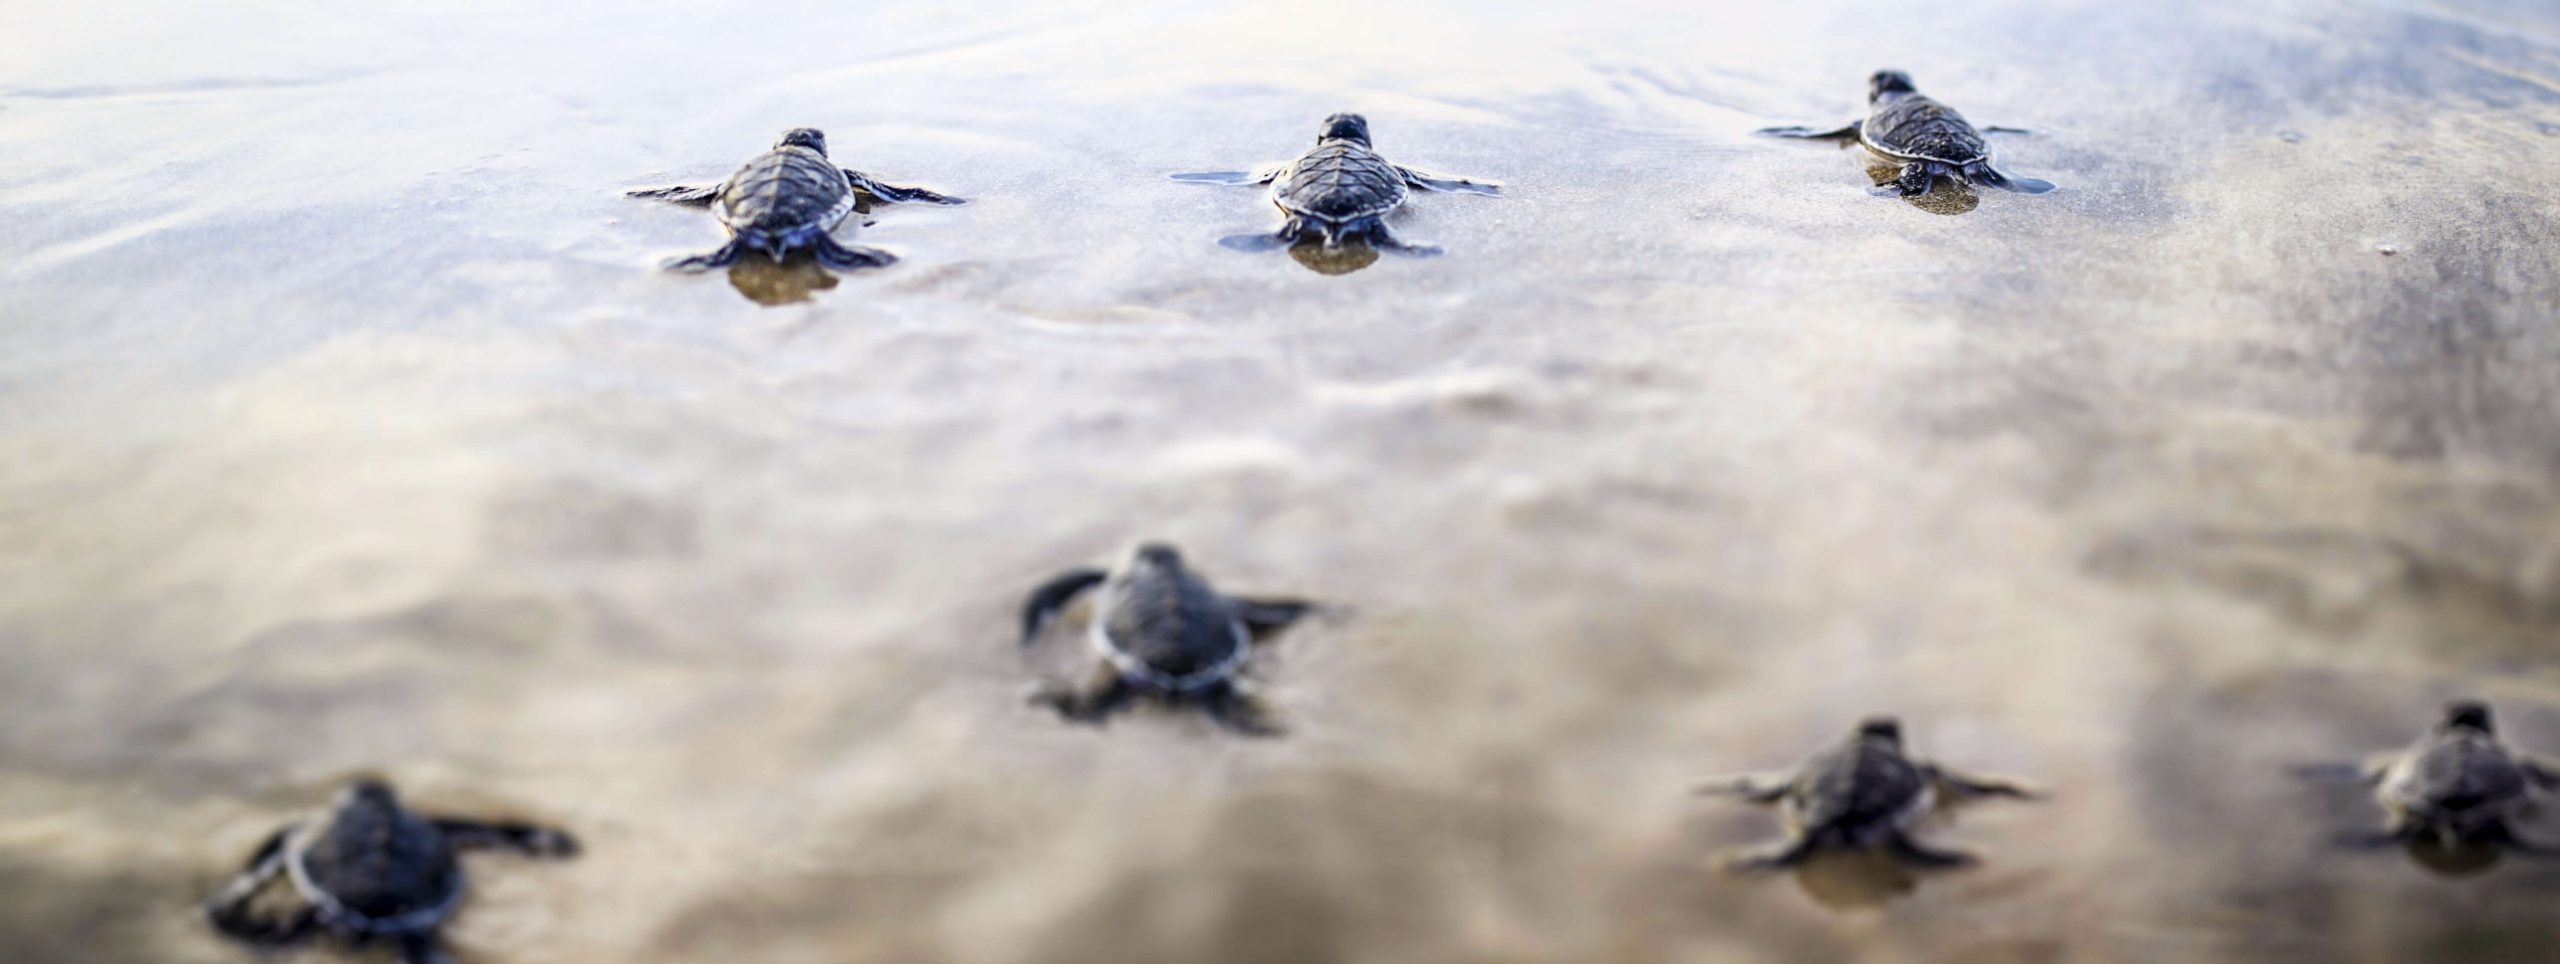 Six Senses Côn Đảo: Tiên Phong Trong Việc Bảo Tồn Loài Rùa Xanh Quý Hiếm